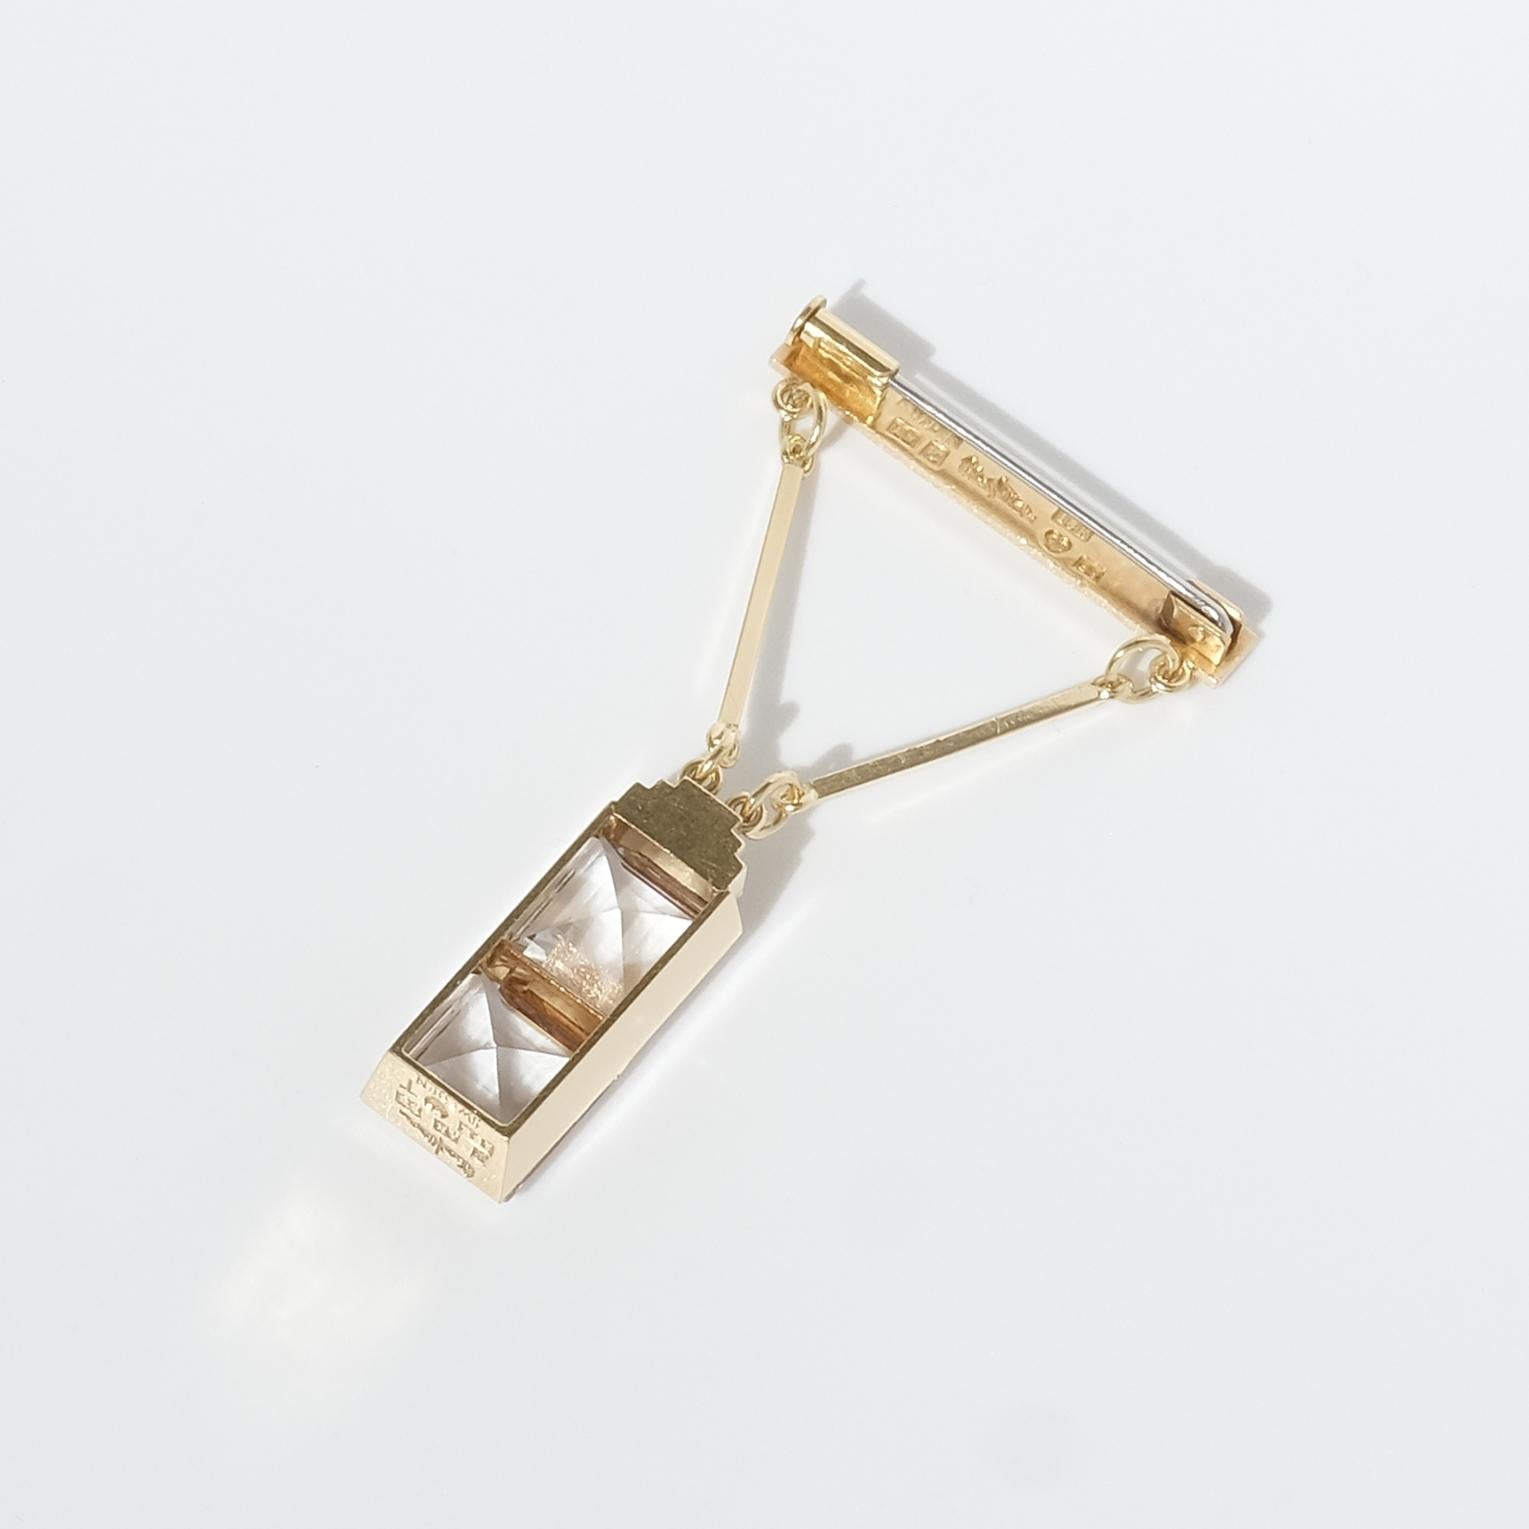 Cette broche en or 18 carats de style Art déco comporte un pendentif en forme d'escalier qui retient deux cristaux de roche carrés à facettes. Les lignes géométriques, les coupes nettes, le design moderne et les cristaux de roche à facettes carrées